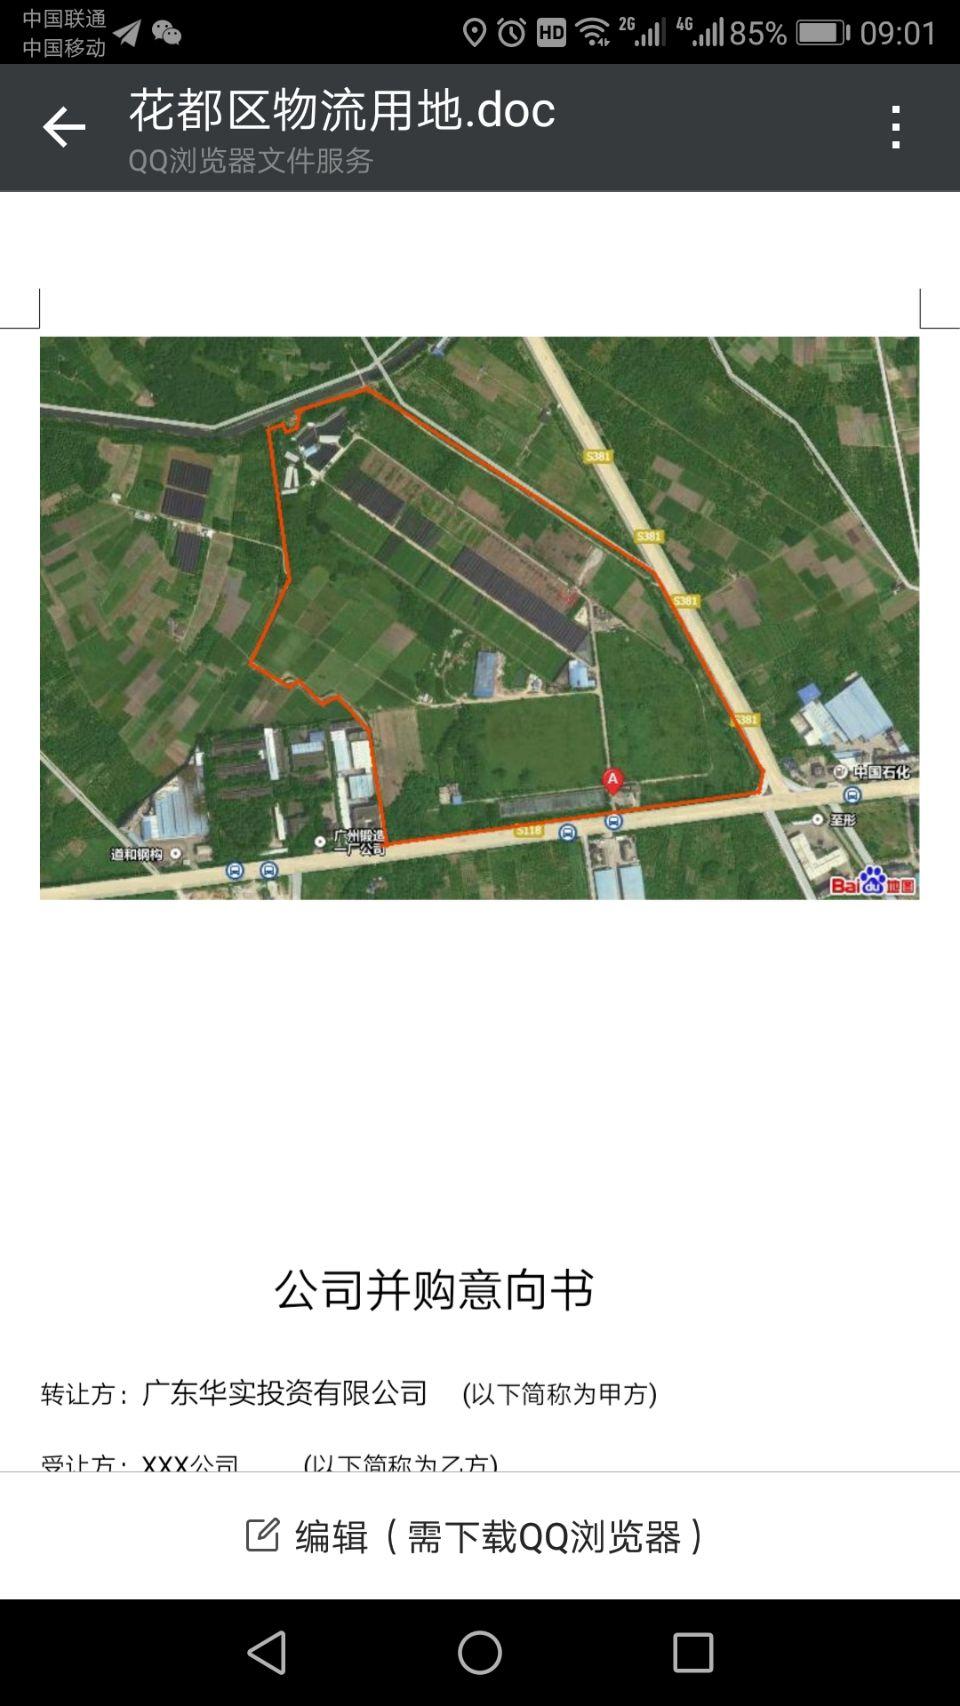 广州市白云区国有仓储建设工业用地出让